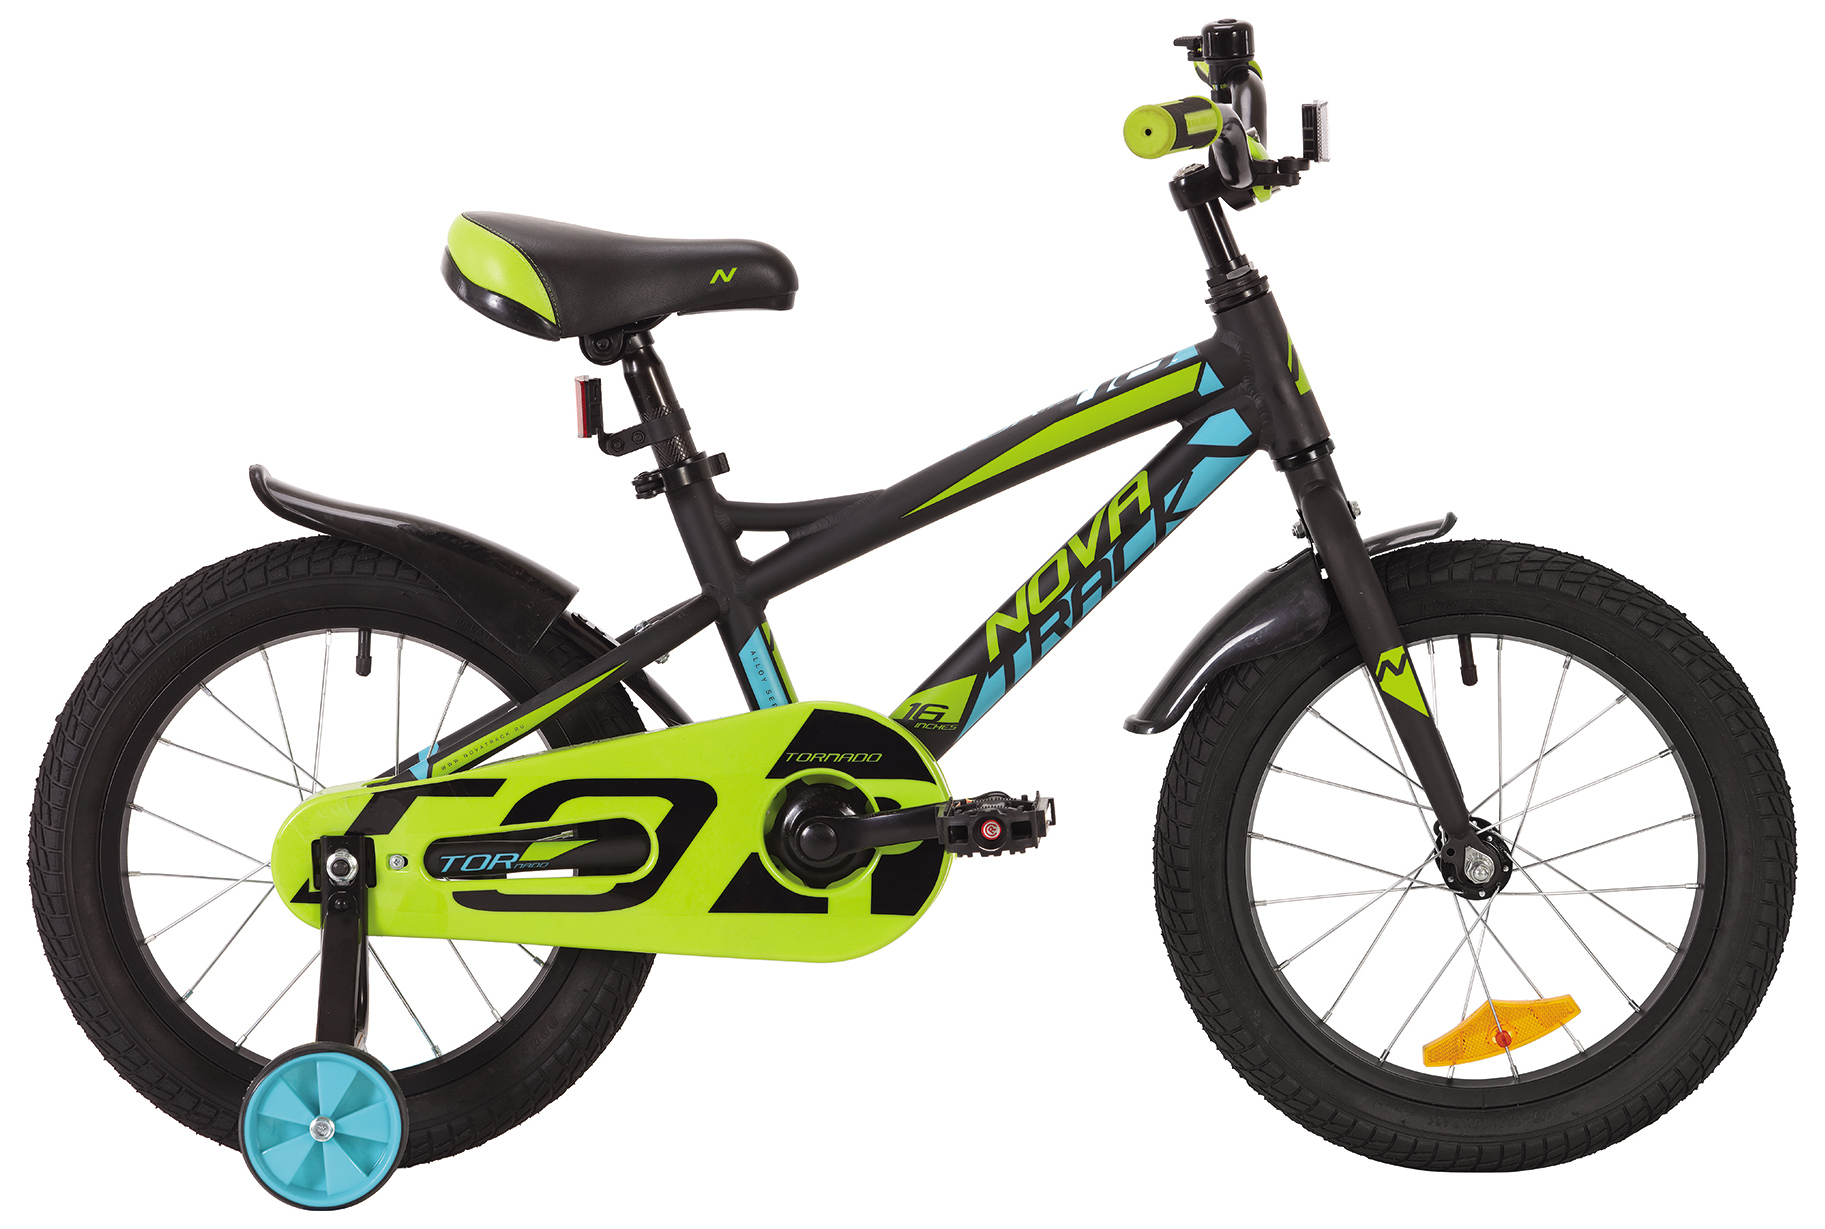 

Велосипед детский двухколесный Novatrack Tornado 2019 цвет черный, 16, Tornado 16